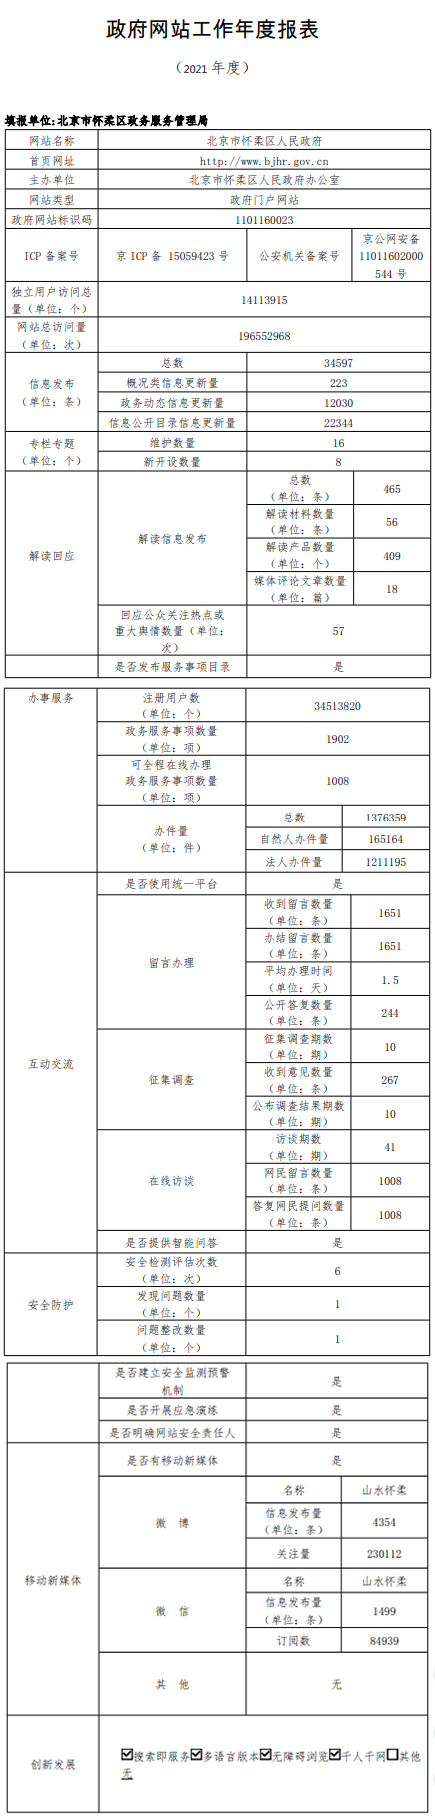 北京市怀柔区人民政府2021年政府网站年度工作报表